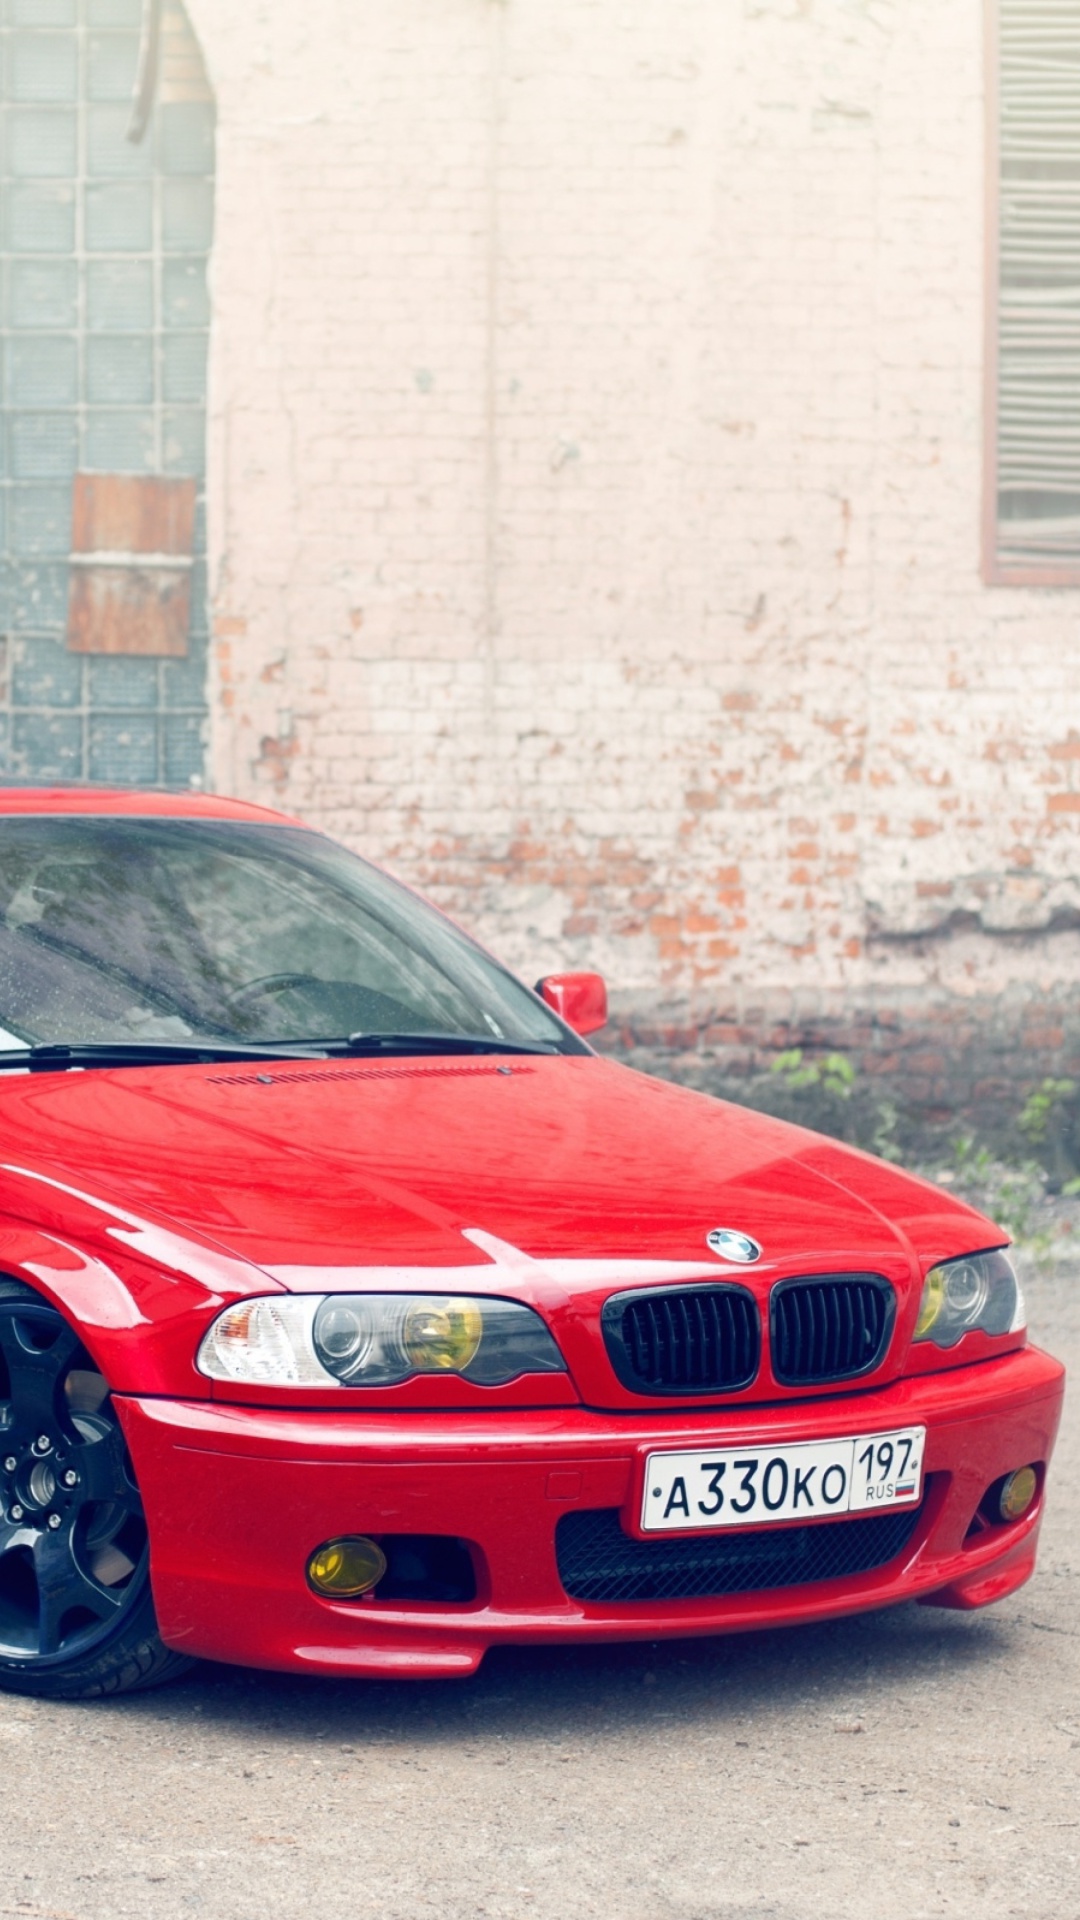 BMW E46 Stance wallpaper 1080x1920